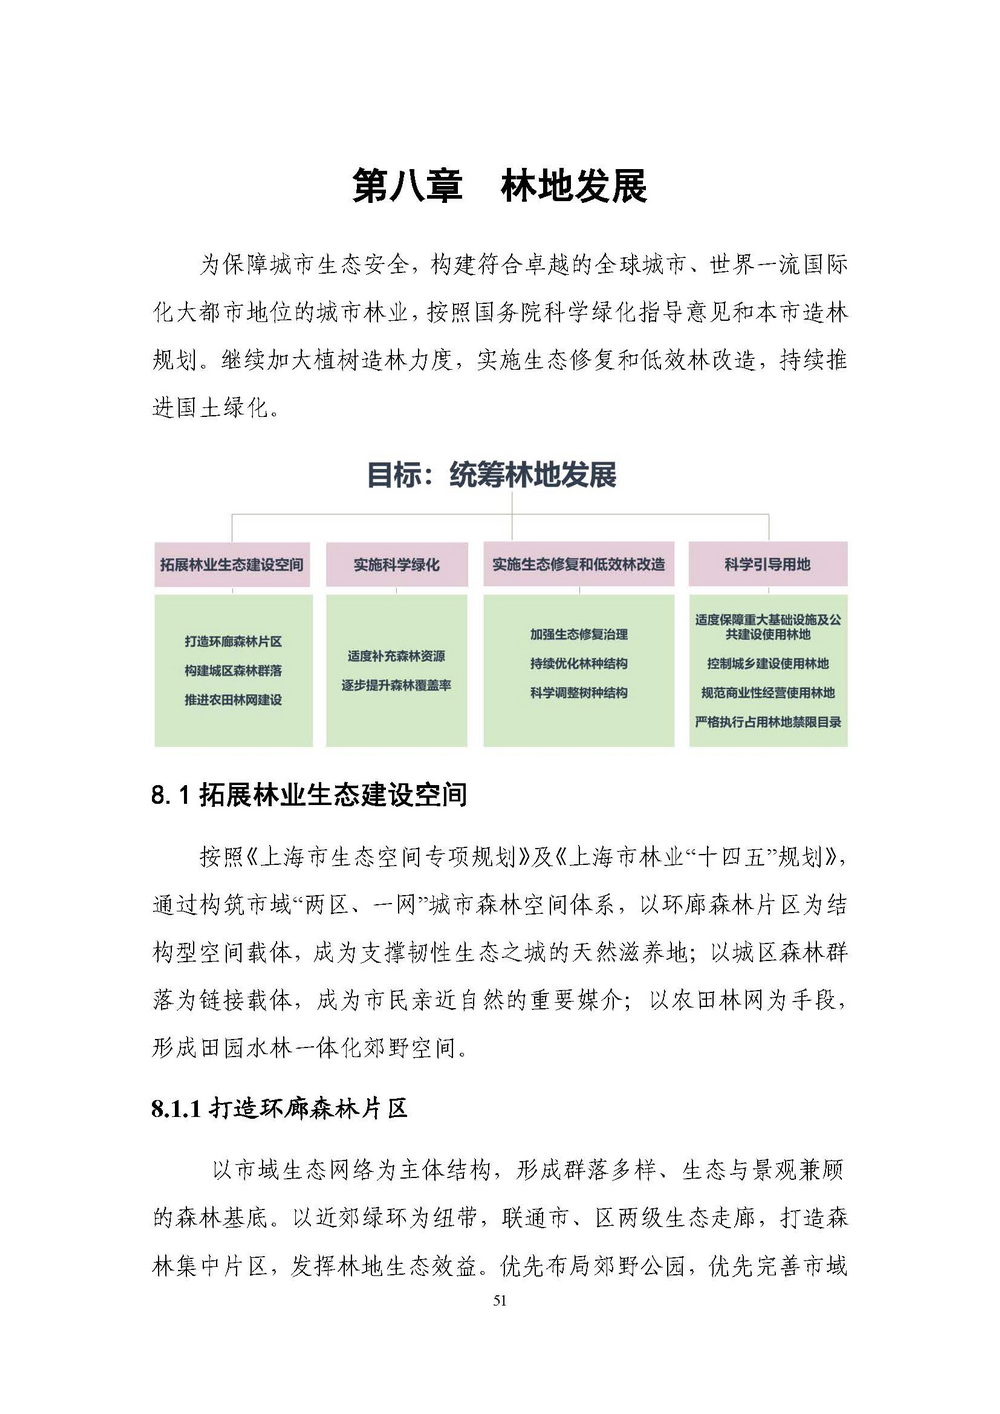 上海市森林和林地保护利用规划文本 公开稿 附图_页面_54.jpg